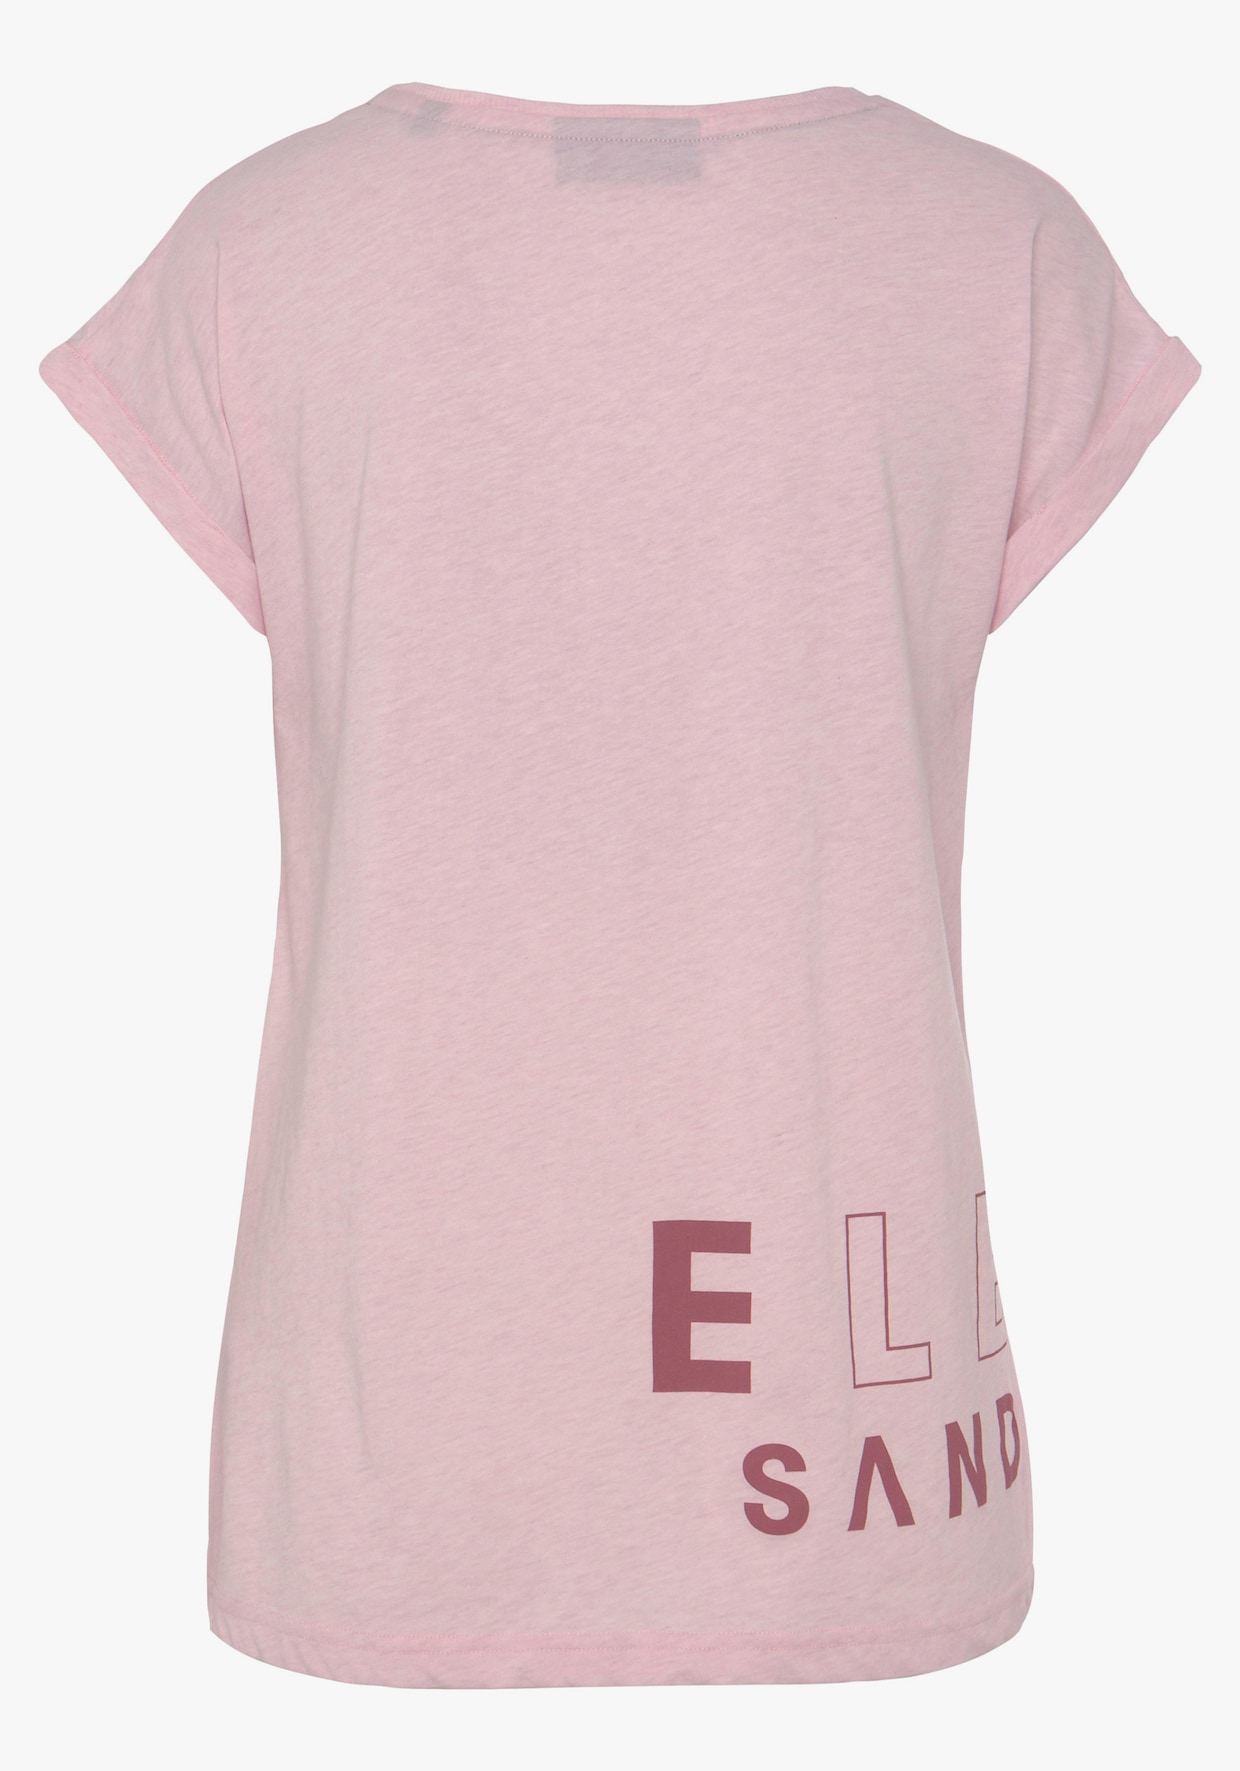 Elbsand T-shirt - roze